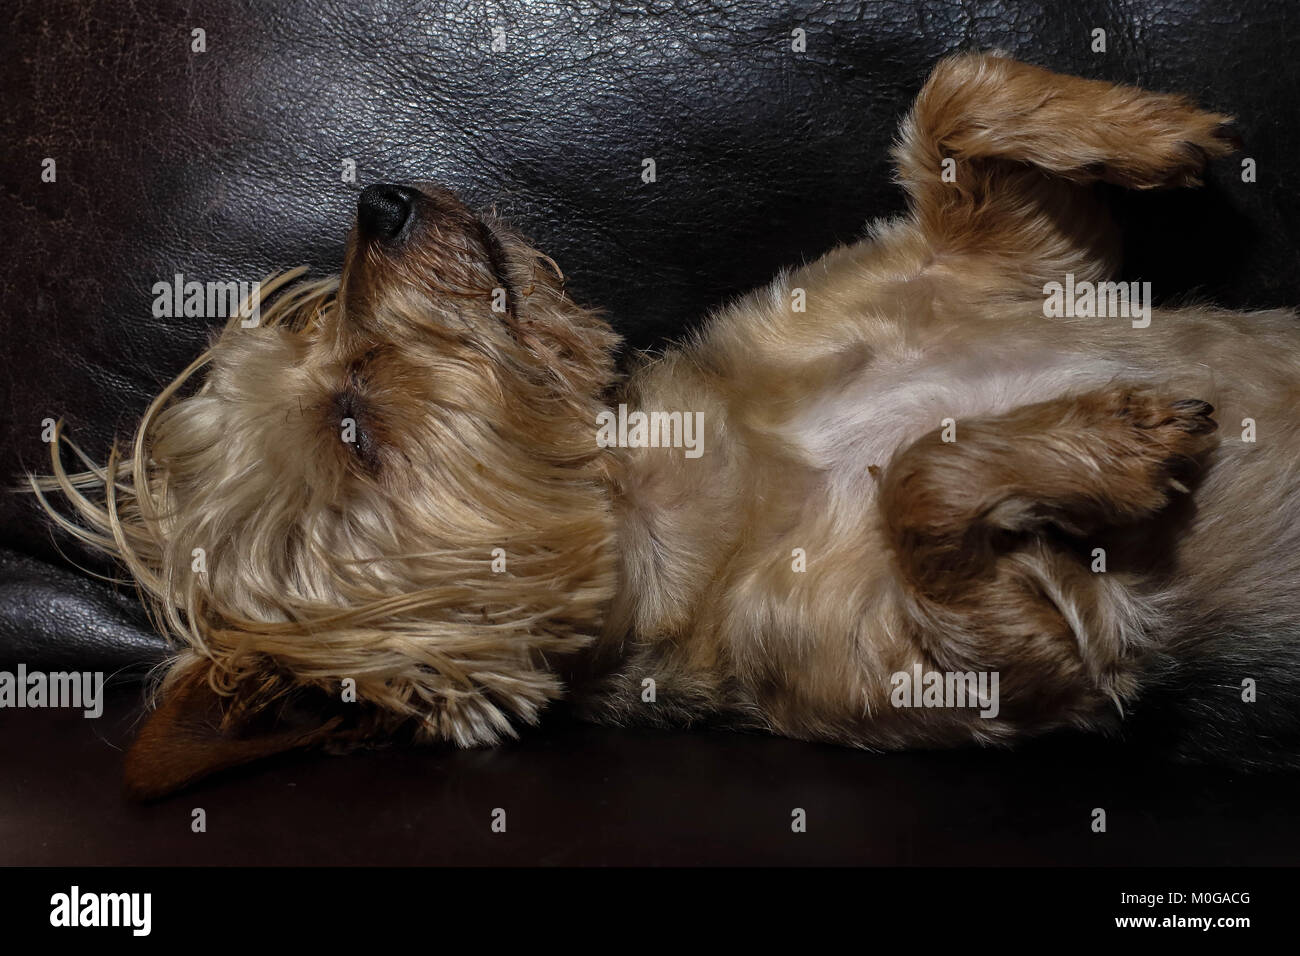 Kleine tan-farbige Hund schläft auf einem braunen Ledersofa, Bild im Querformat Stockfoto